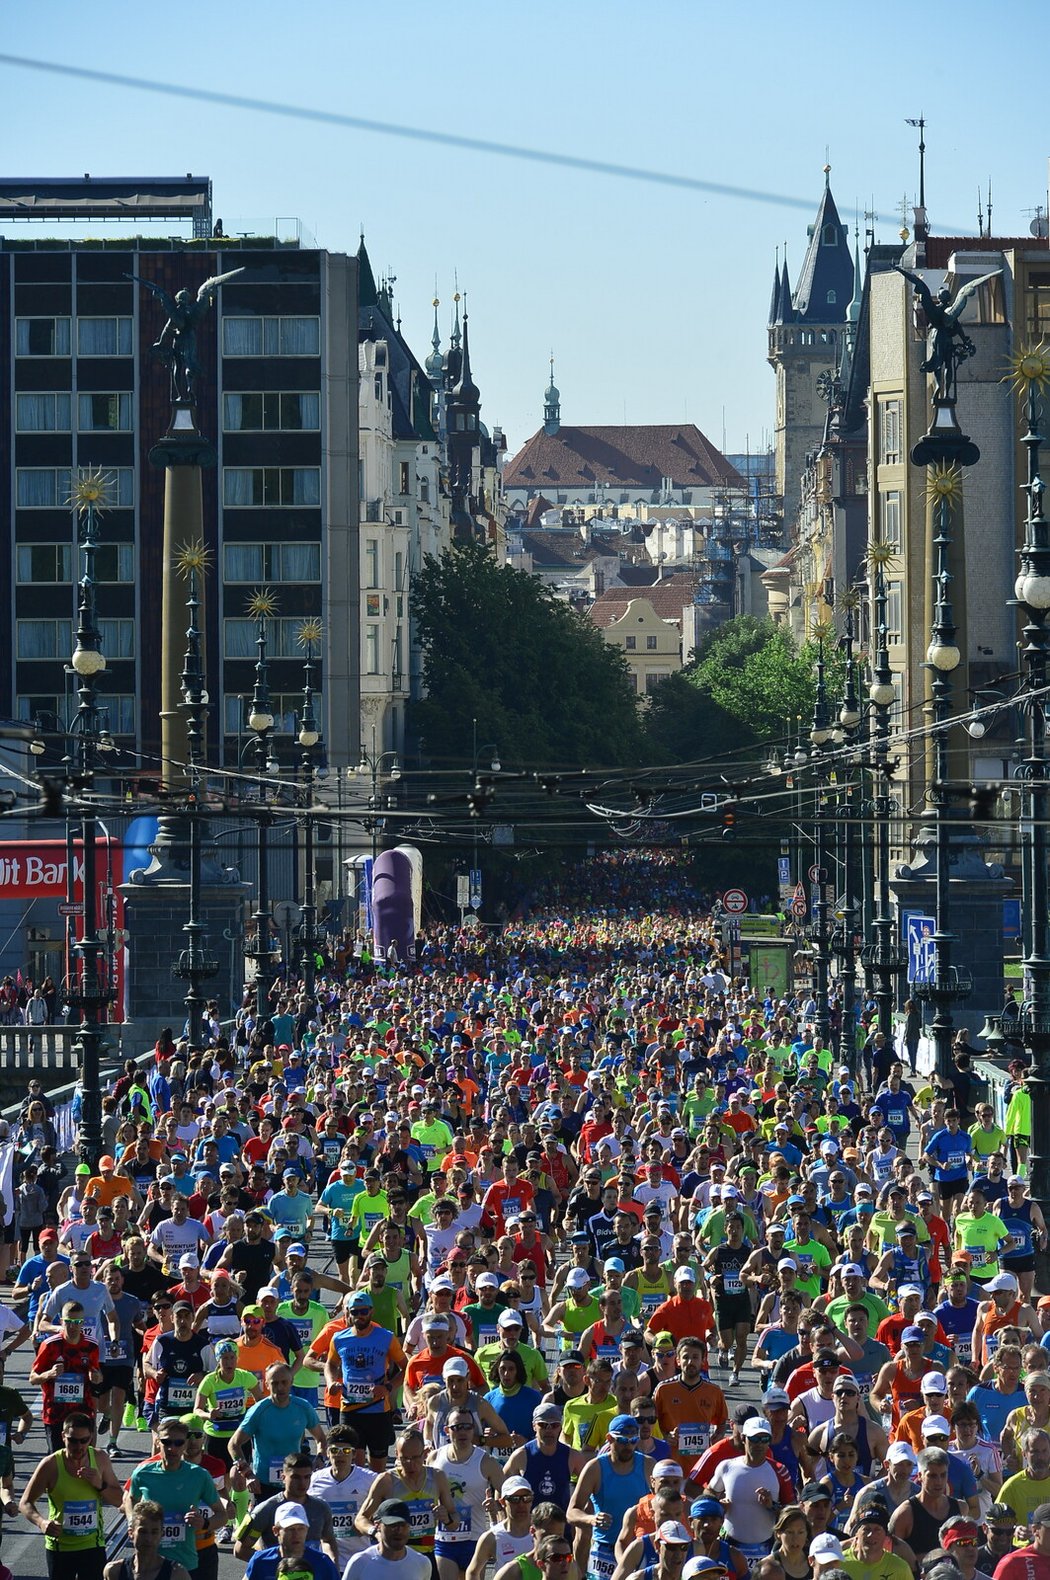 Letos se poběží už 26. ročník Pražského mezinárodního maratonu